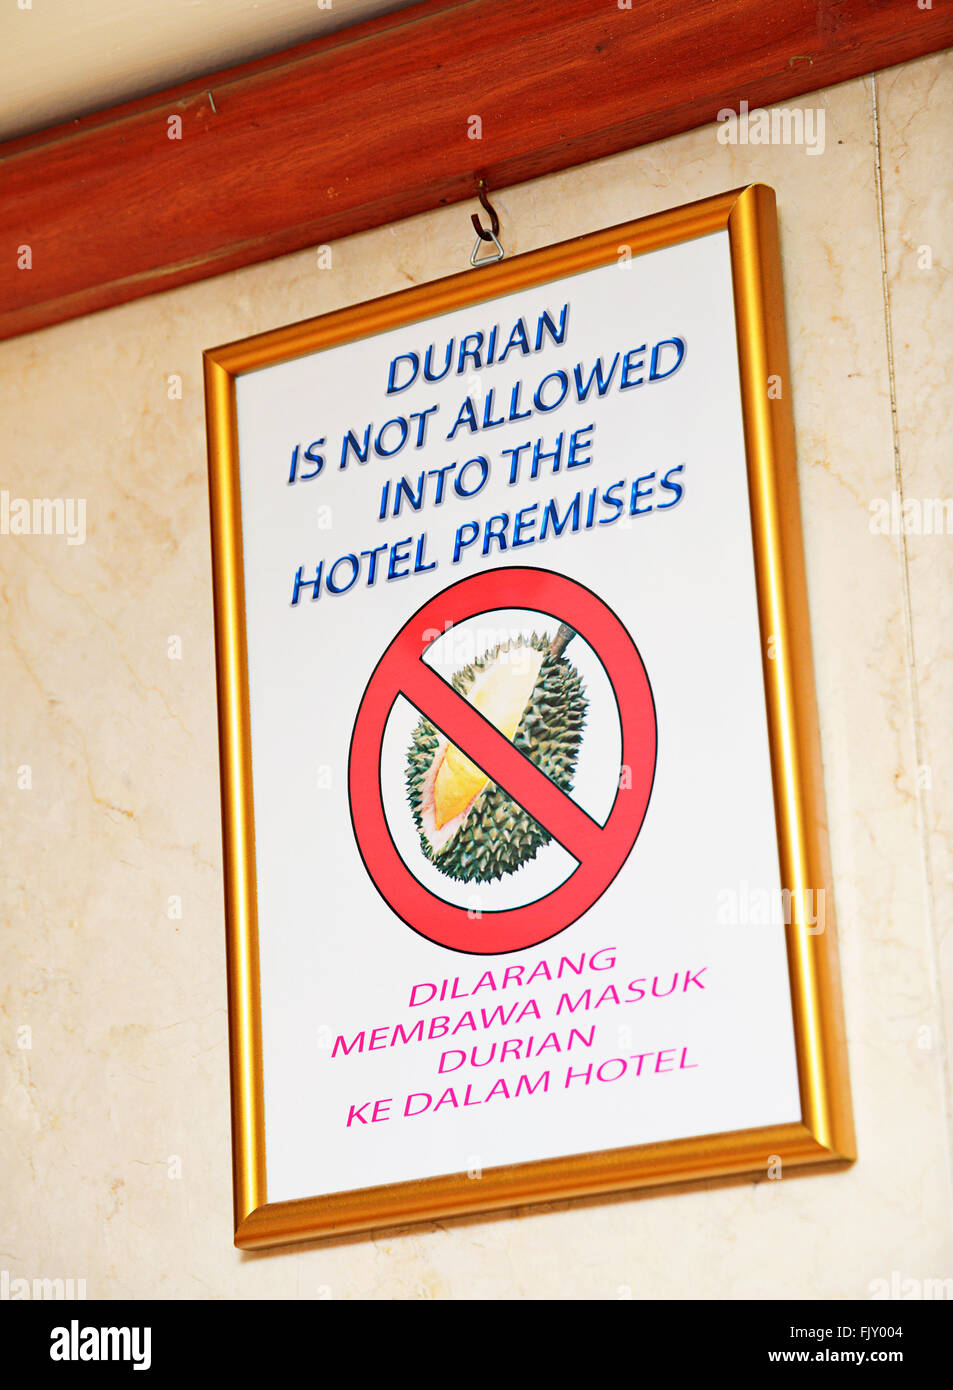 Panneau d'avertissement vous interdit de prendre une odeur de fruits Durian dans les locaux de l'hôtel. Banque D'Images